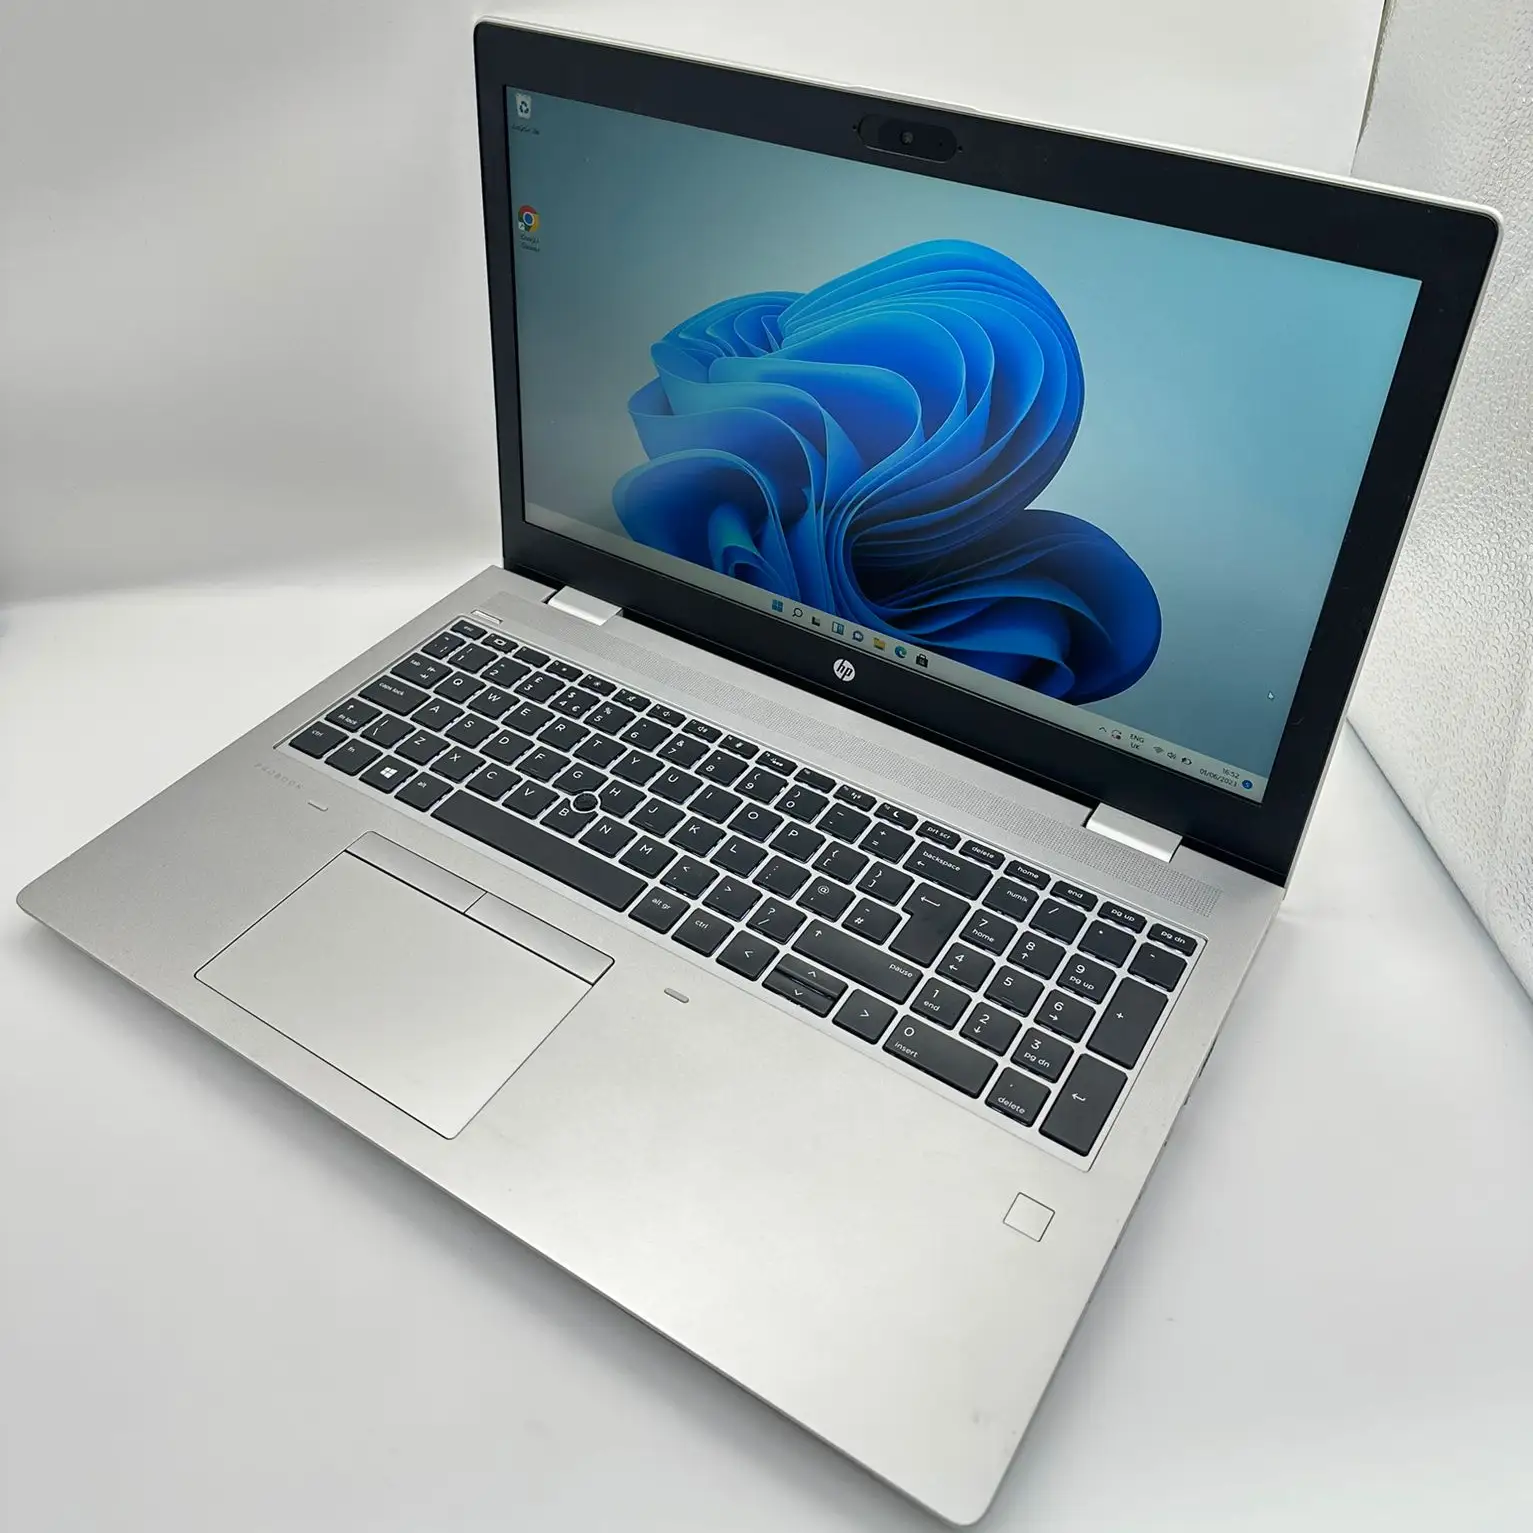 HP ProBook 650 G5   Intel core i5-8265U CPU 1.80Gh (8 CPUs) 8Gb Ram  256 Gb SSD Slim Laptop